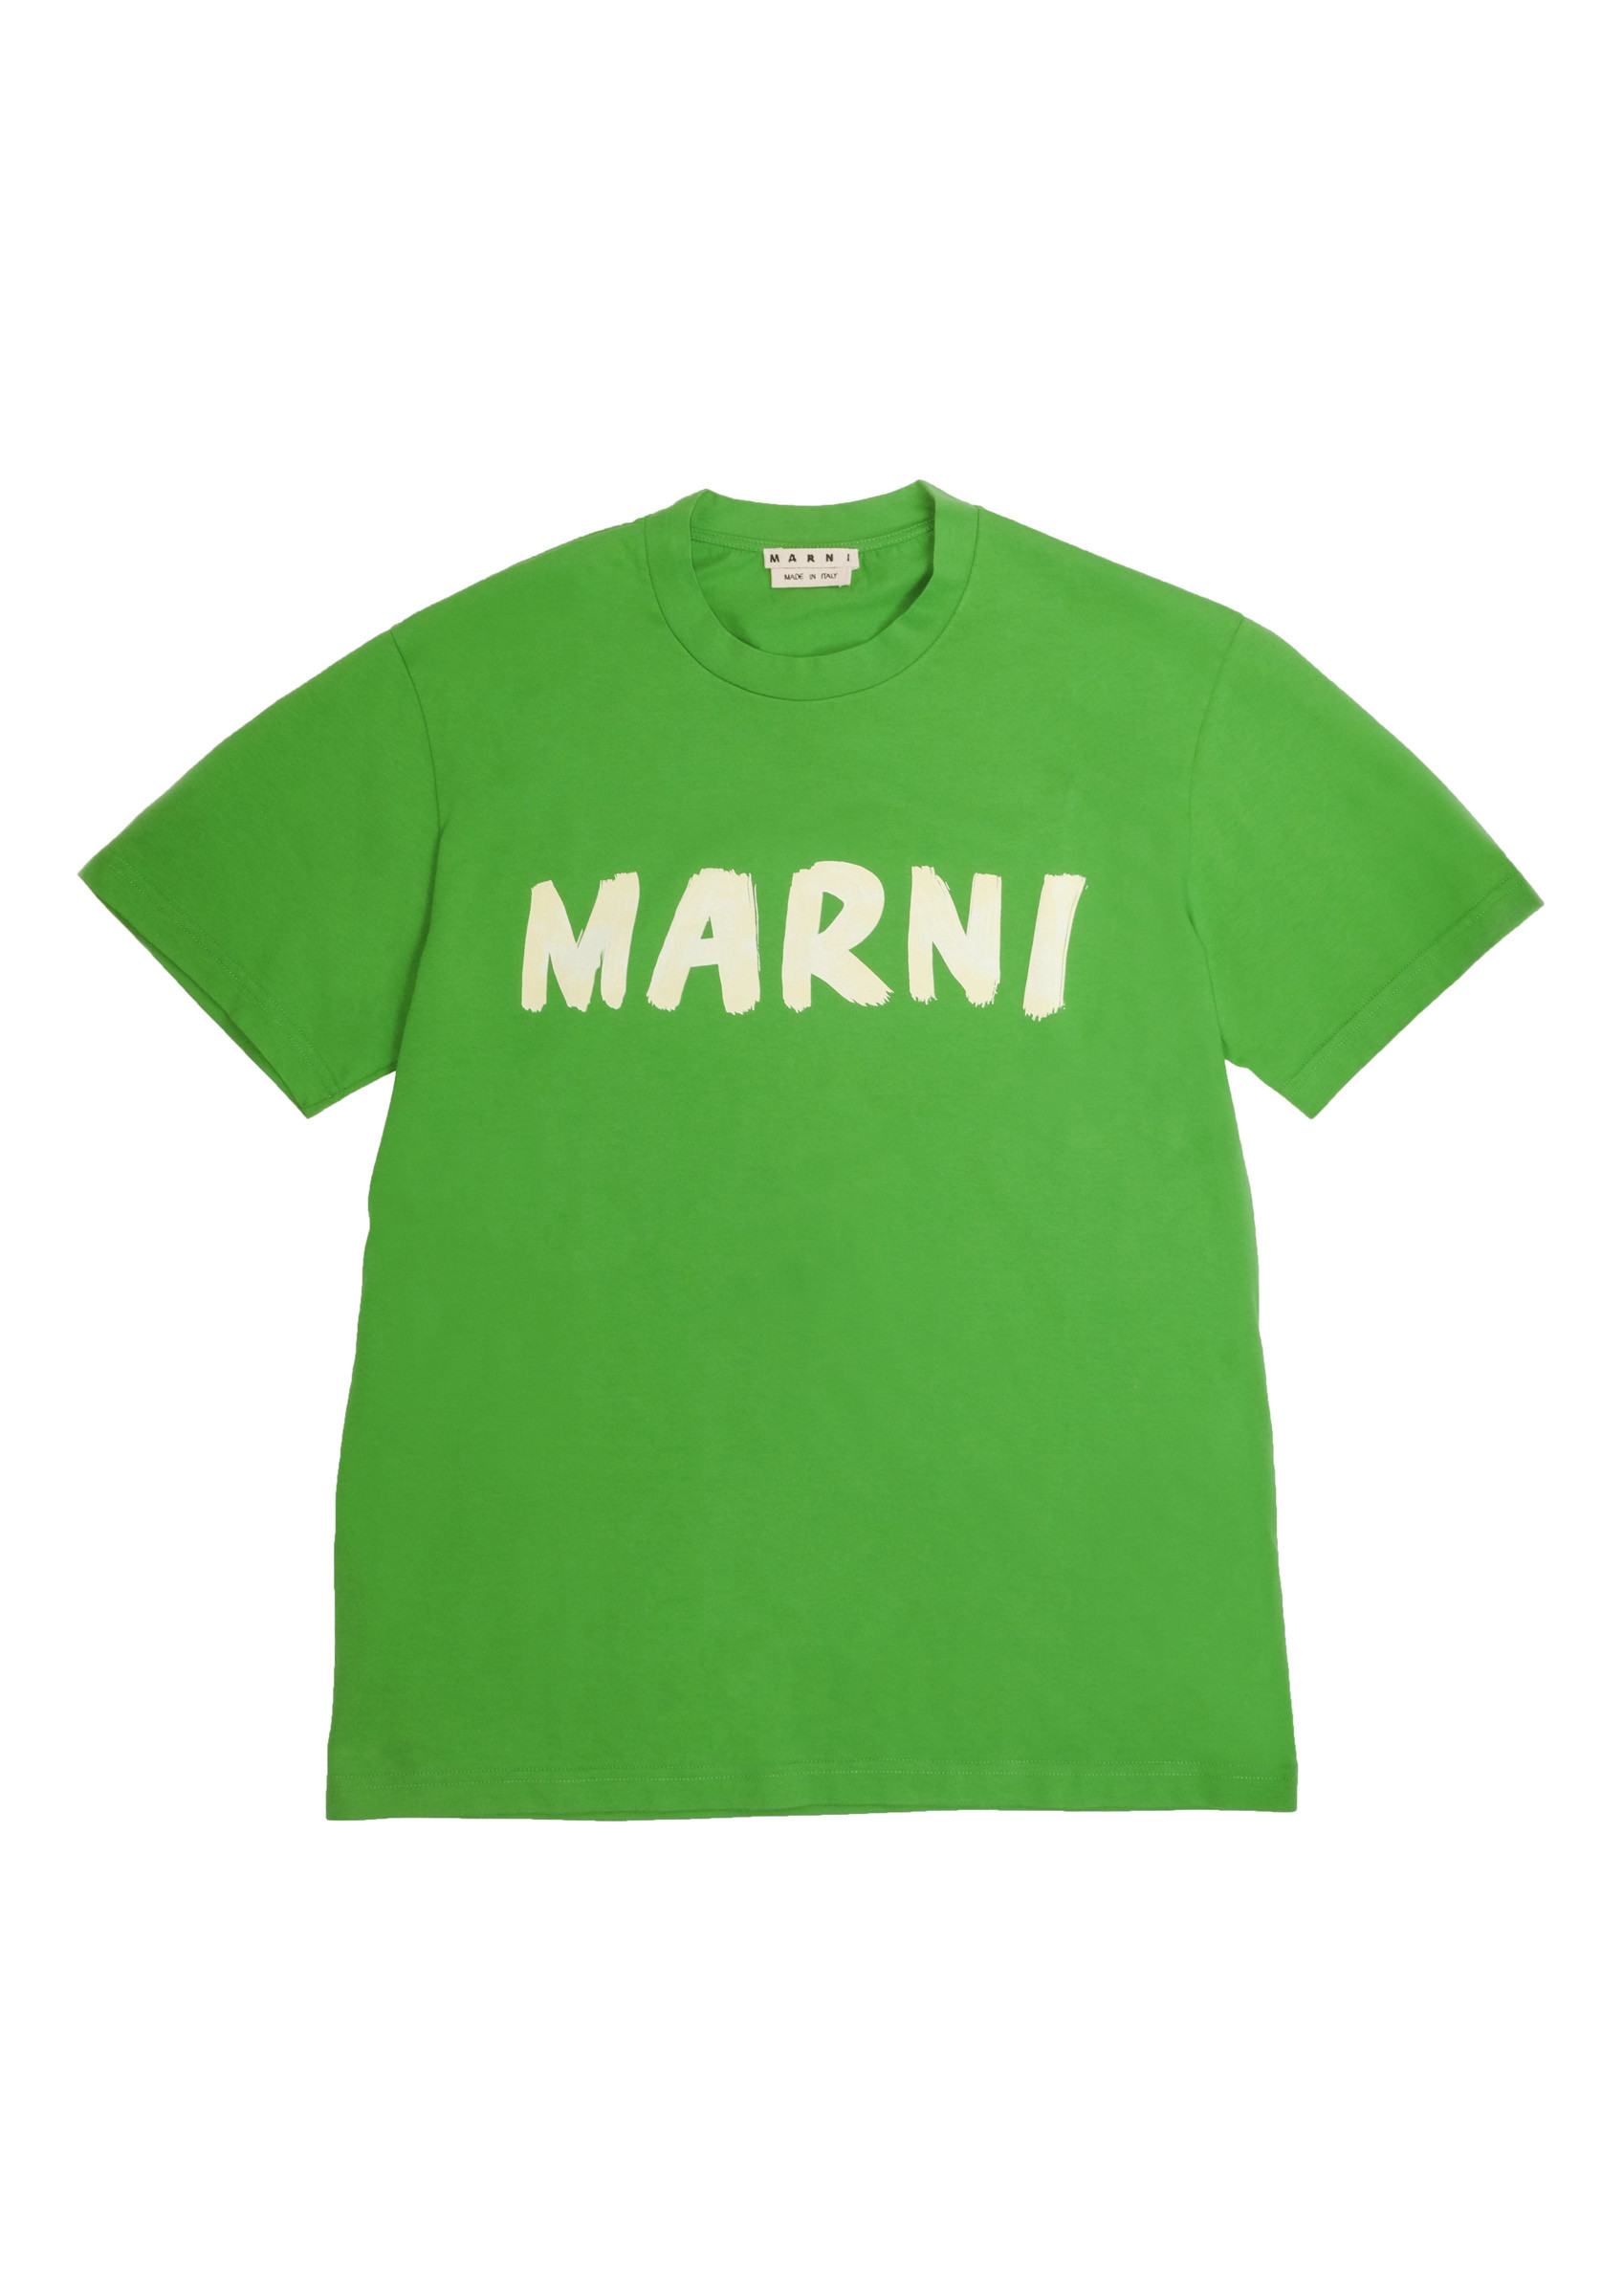 マルニが日本限定アイテム発売、ハンドペイントの「MARNI」ロゴをプリント